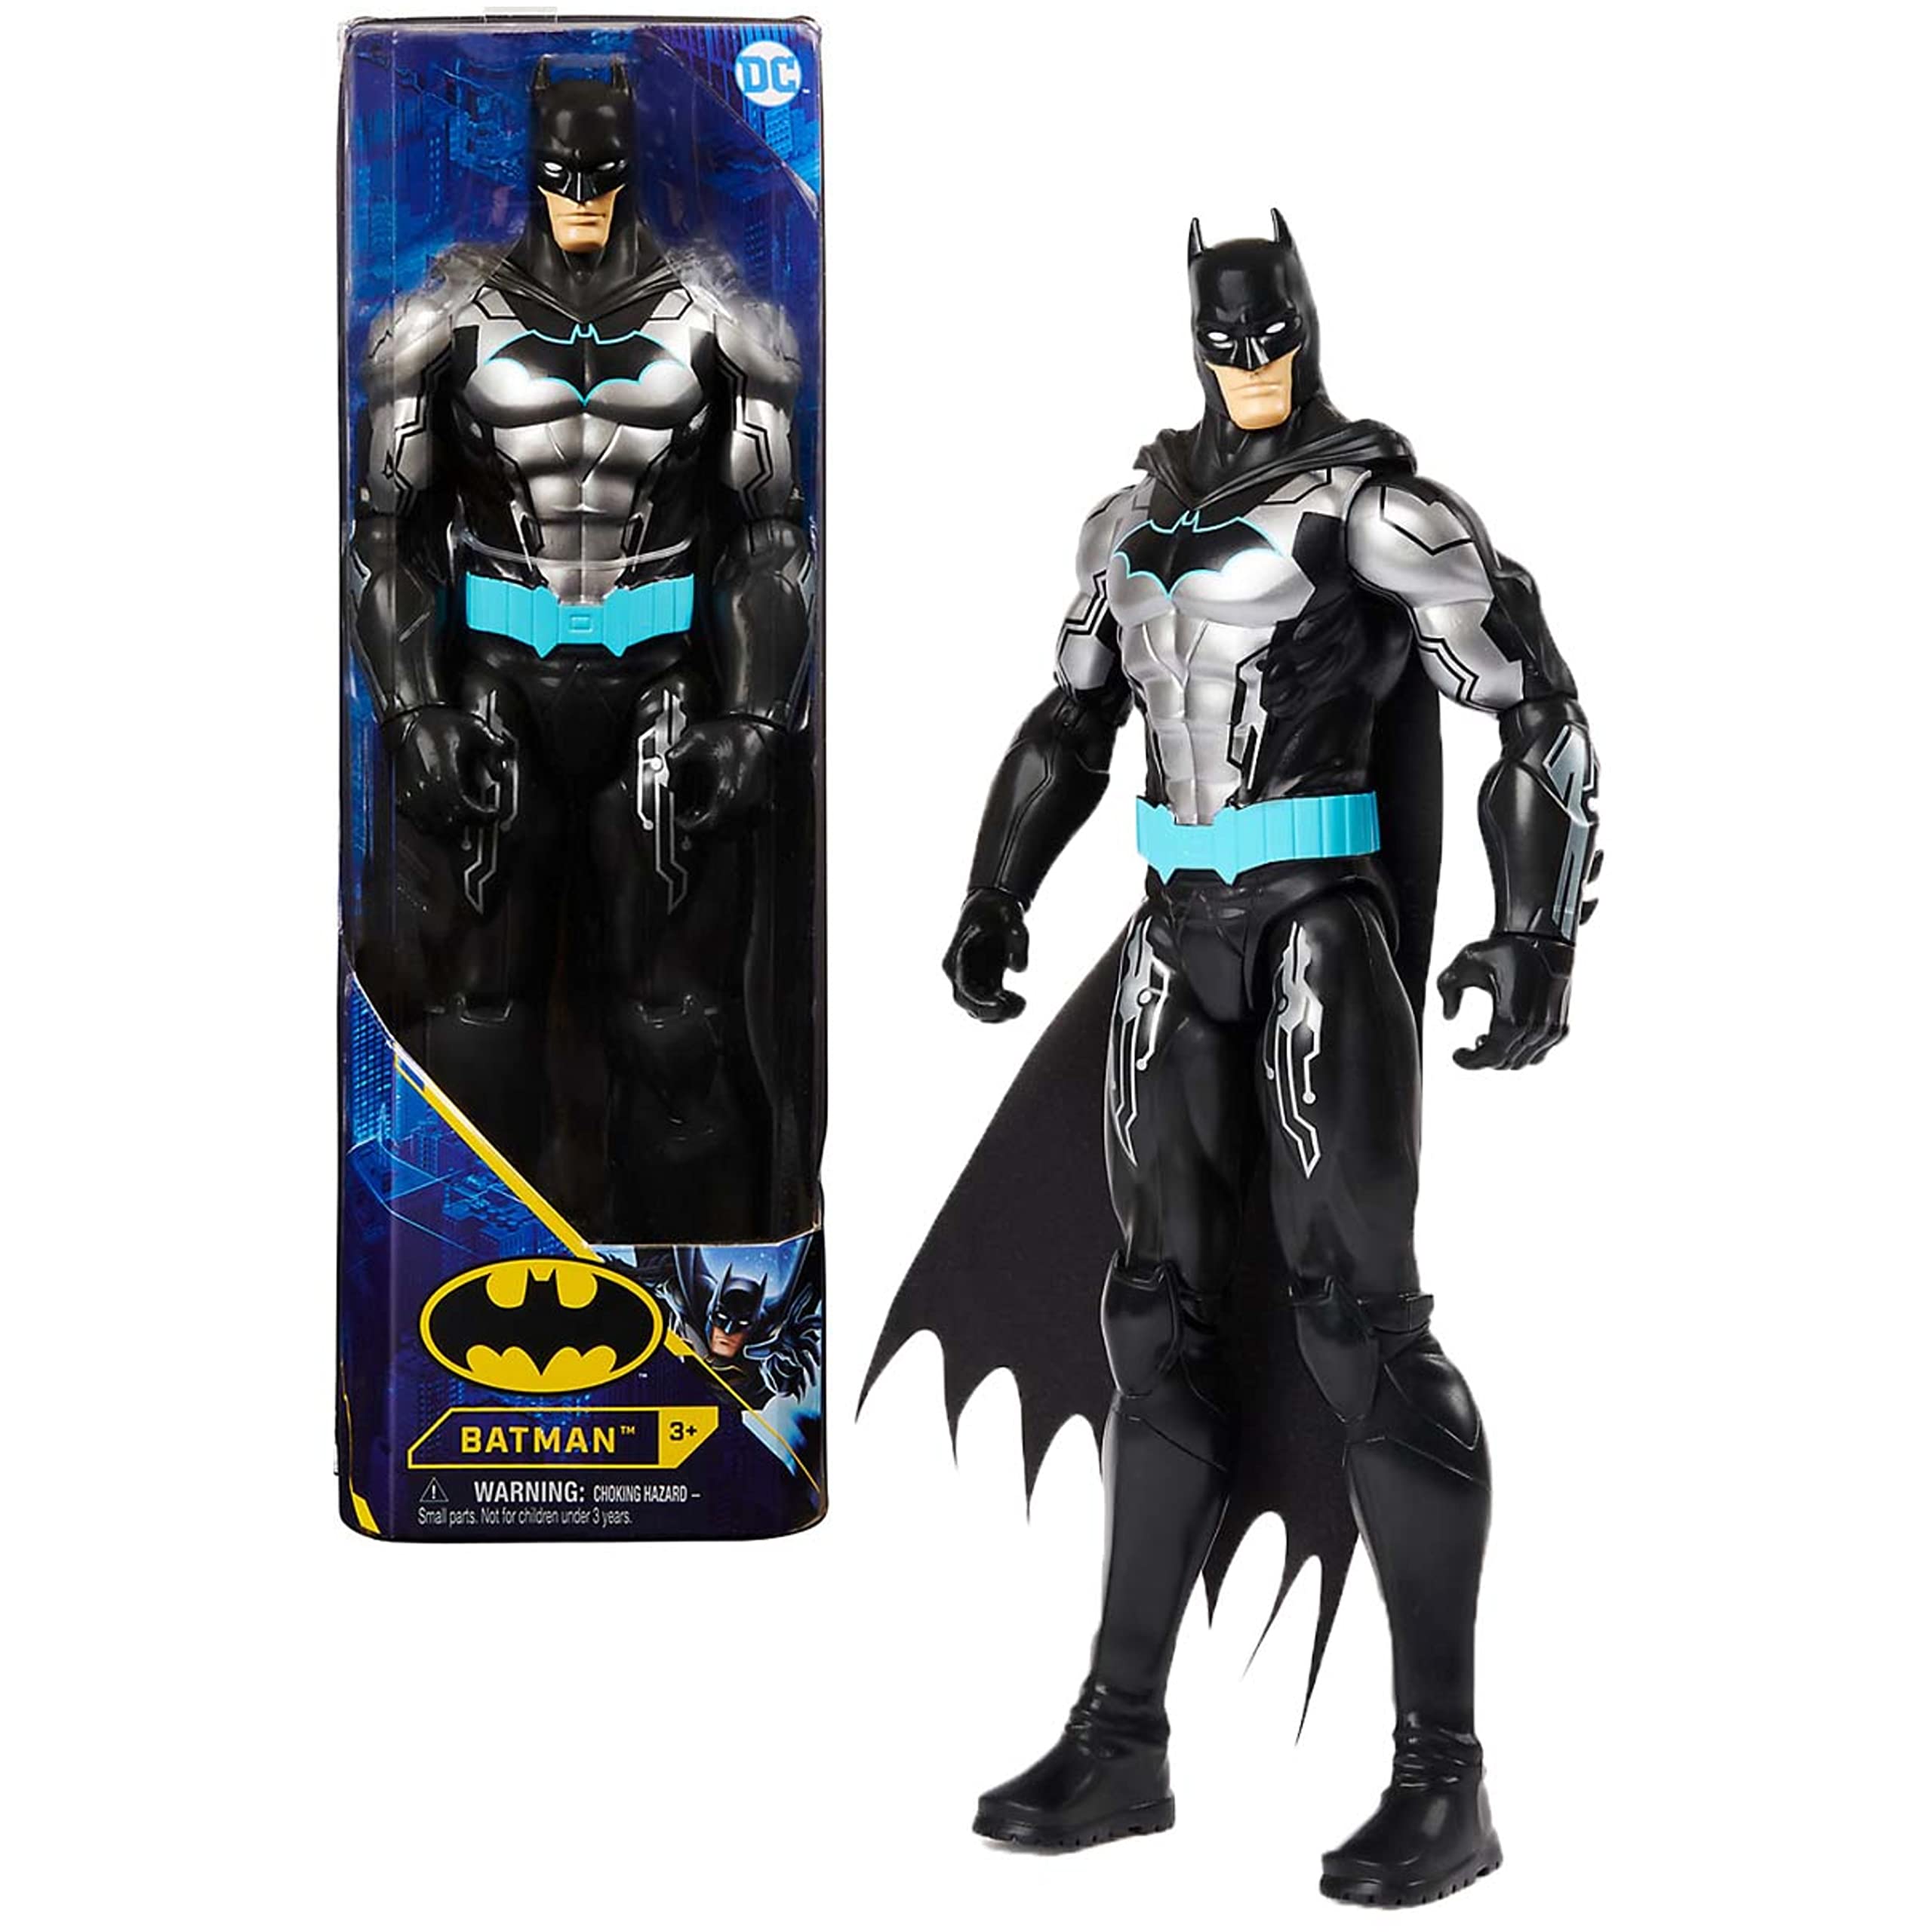 Batman 12-inch Bat-Tech Action Figure (Black/Blue Suit), Kids Toys for Boys Aged 3 and up